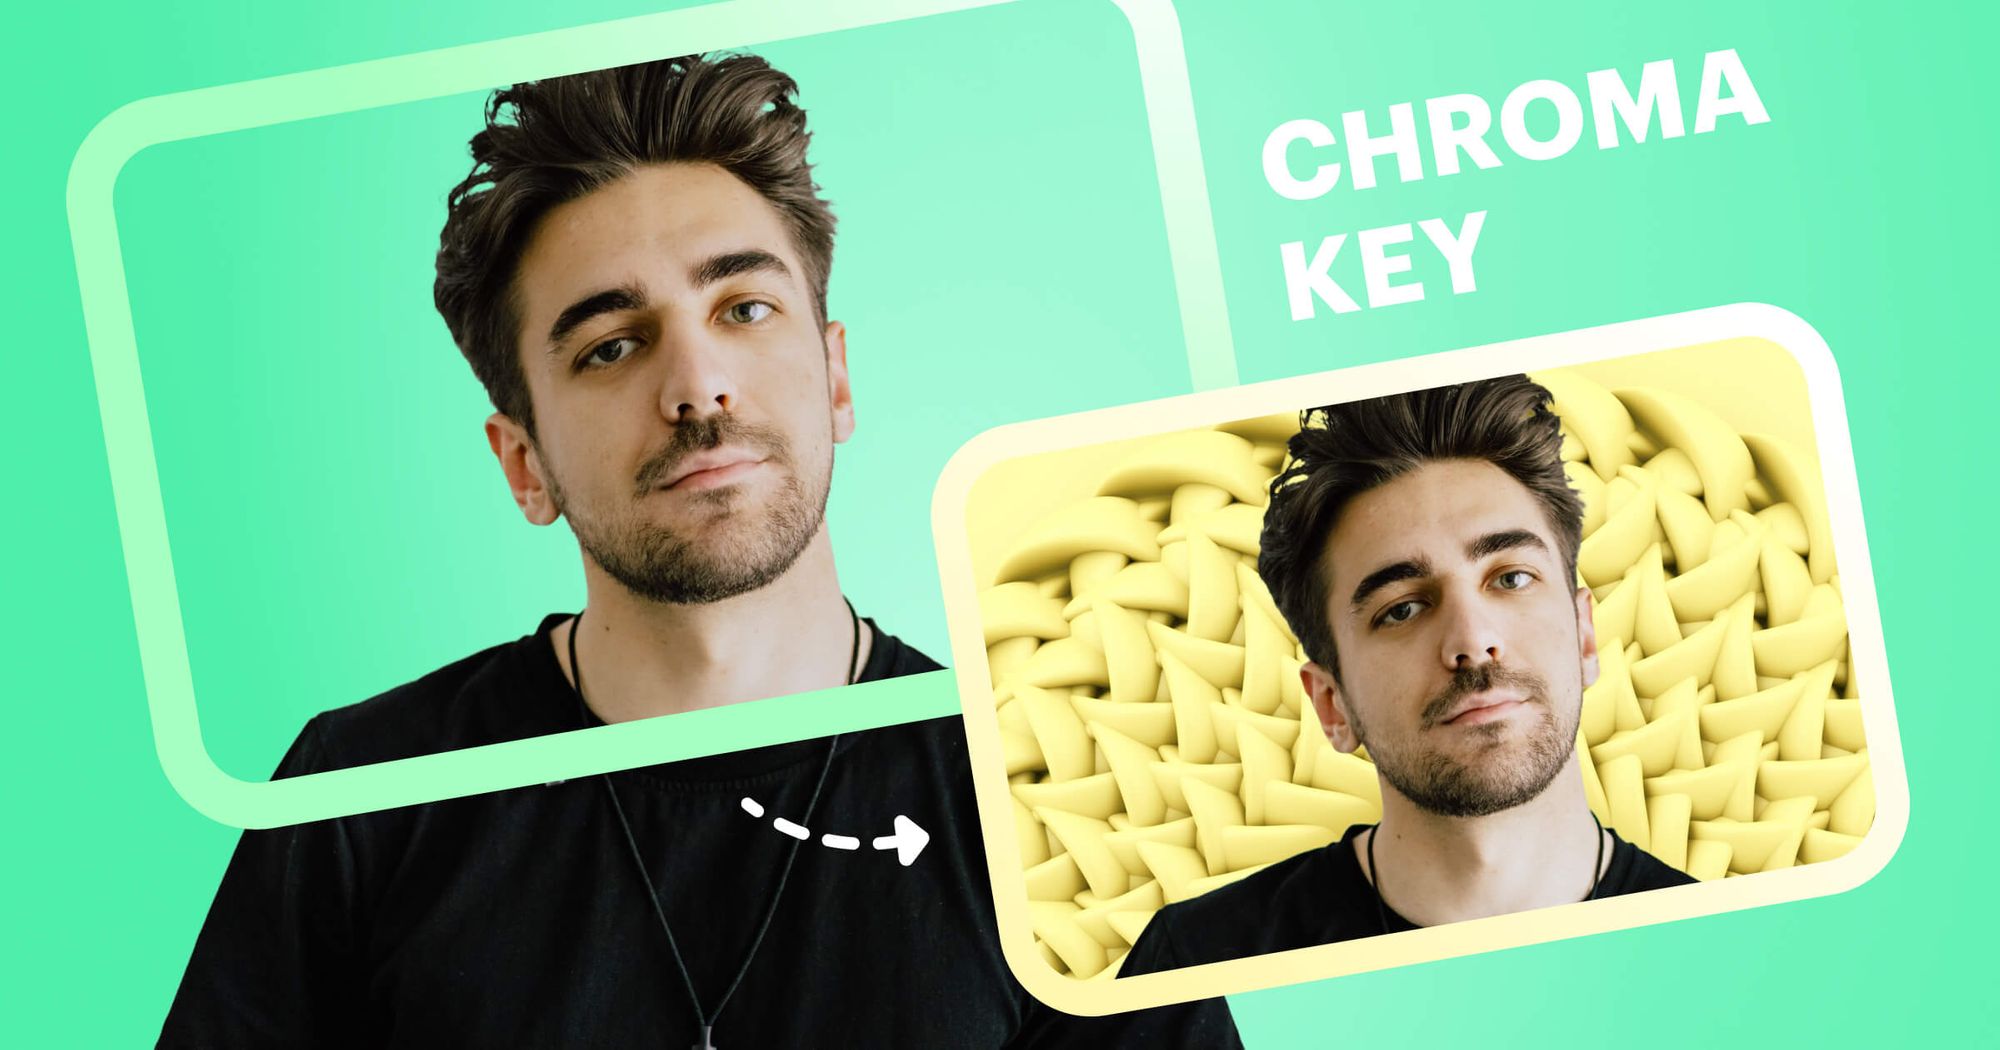 Chroma Key: Chroma Key - giải pháp tuyệt vời cho các ảnh nền chuyên nghiệp. Công nghệ này cho phép bạn dễ dàng thay đổi phông màn hình sau khi quay phim hay chụp ảnh. Hãy nhấn vào hình ảnh để tìm hiểu chi tiết hơn!